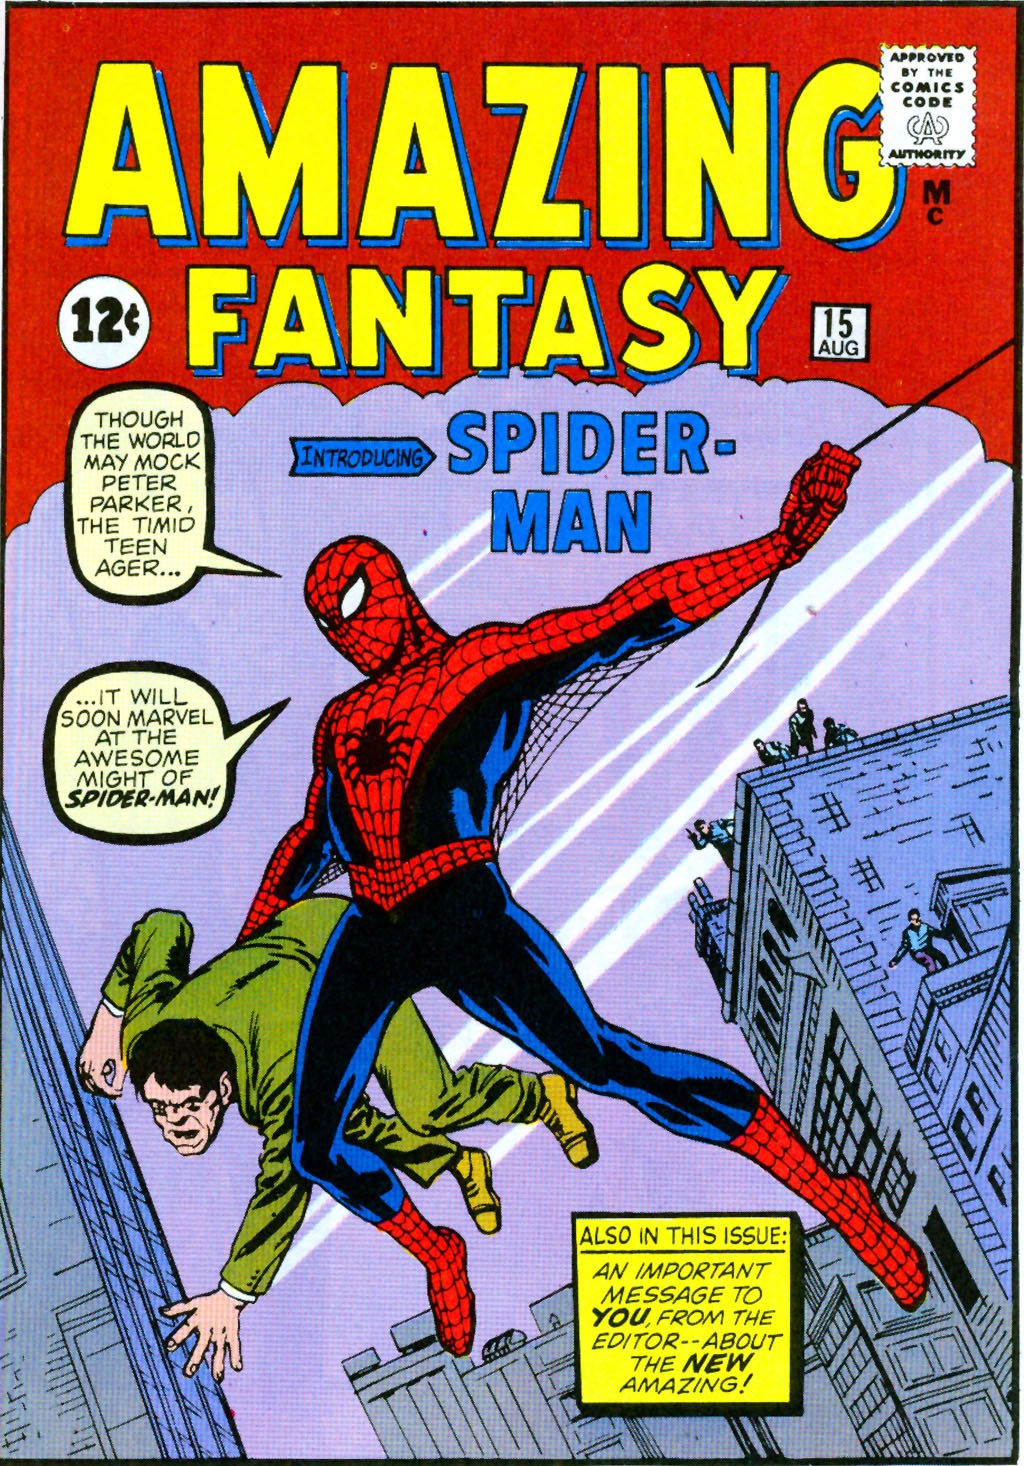 The Amazing Spider-man Jogo De Tabuleiro Com O Quarteto Fantástico!!!